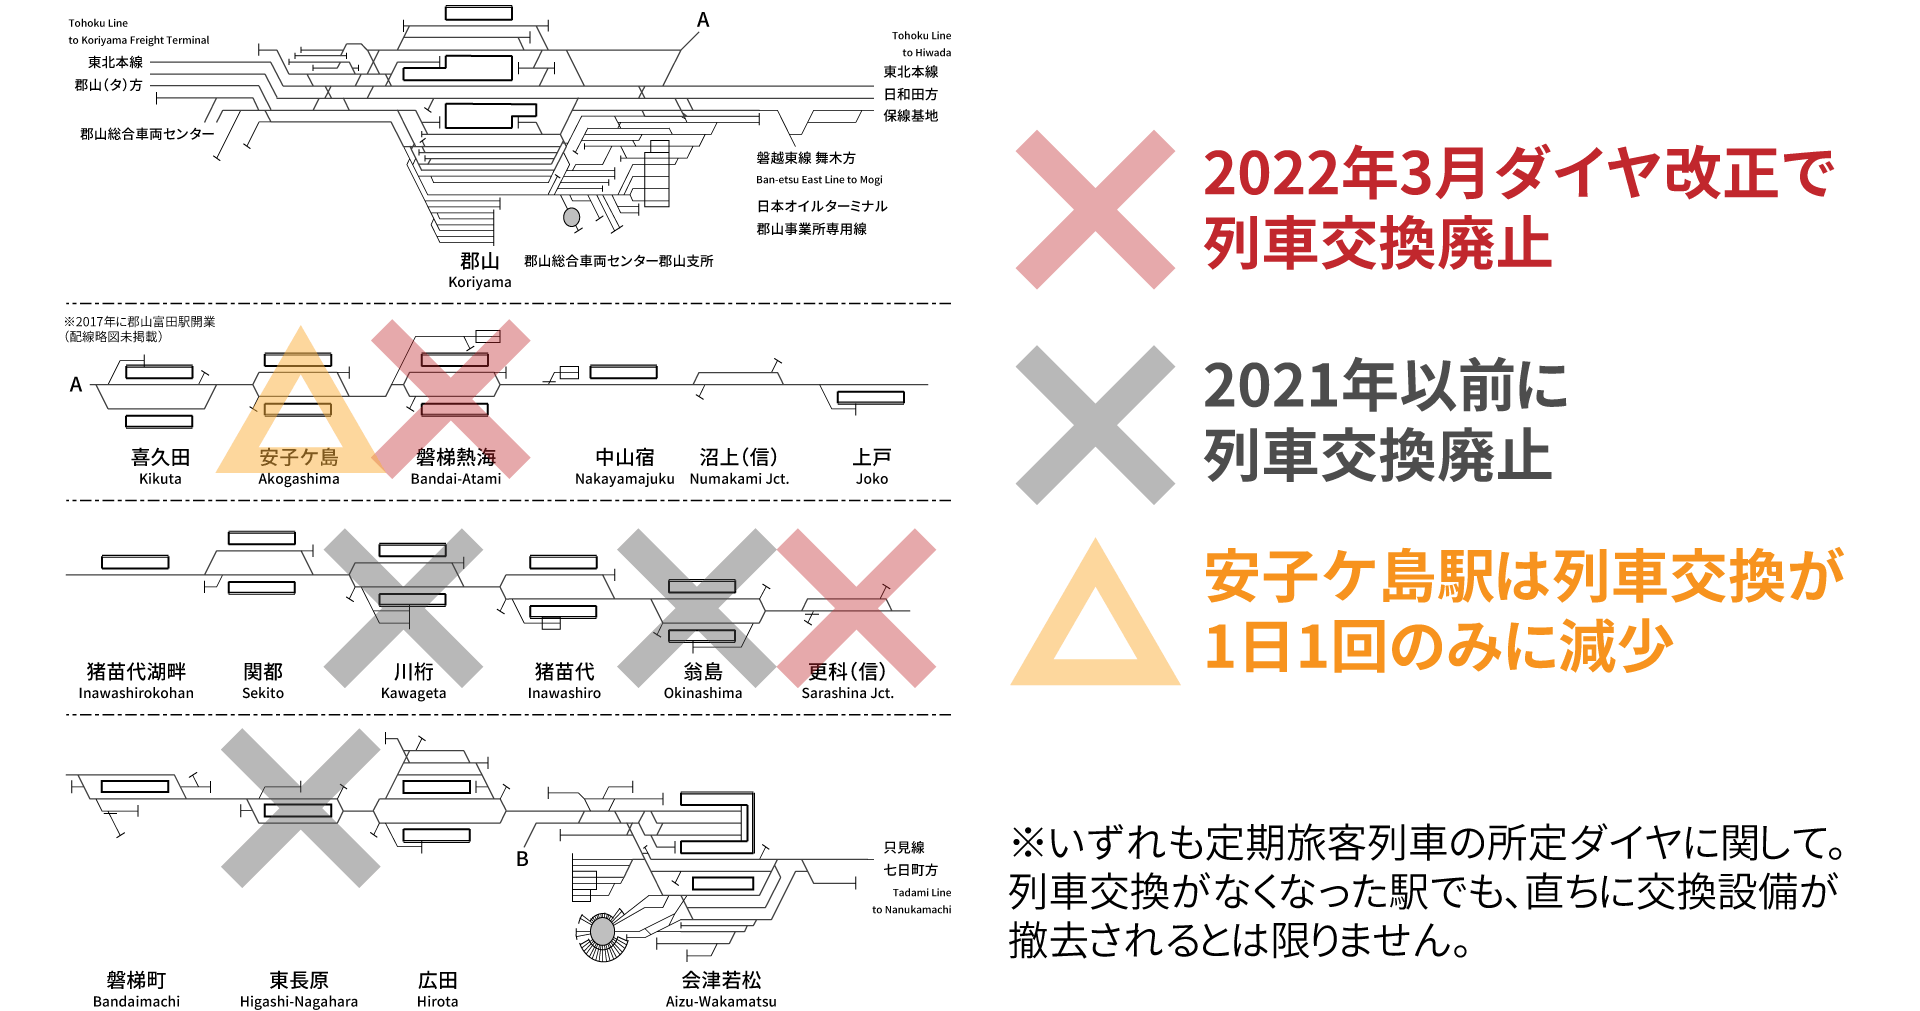 ダイヤ 改正 2022 時刻 表